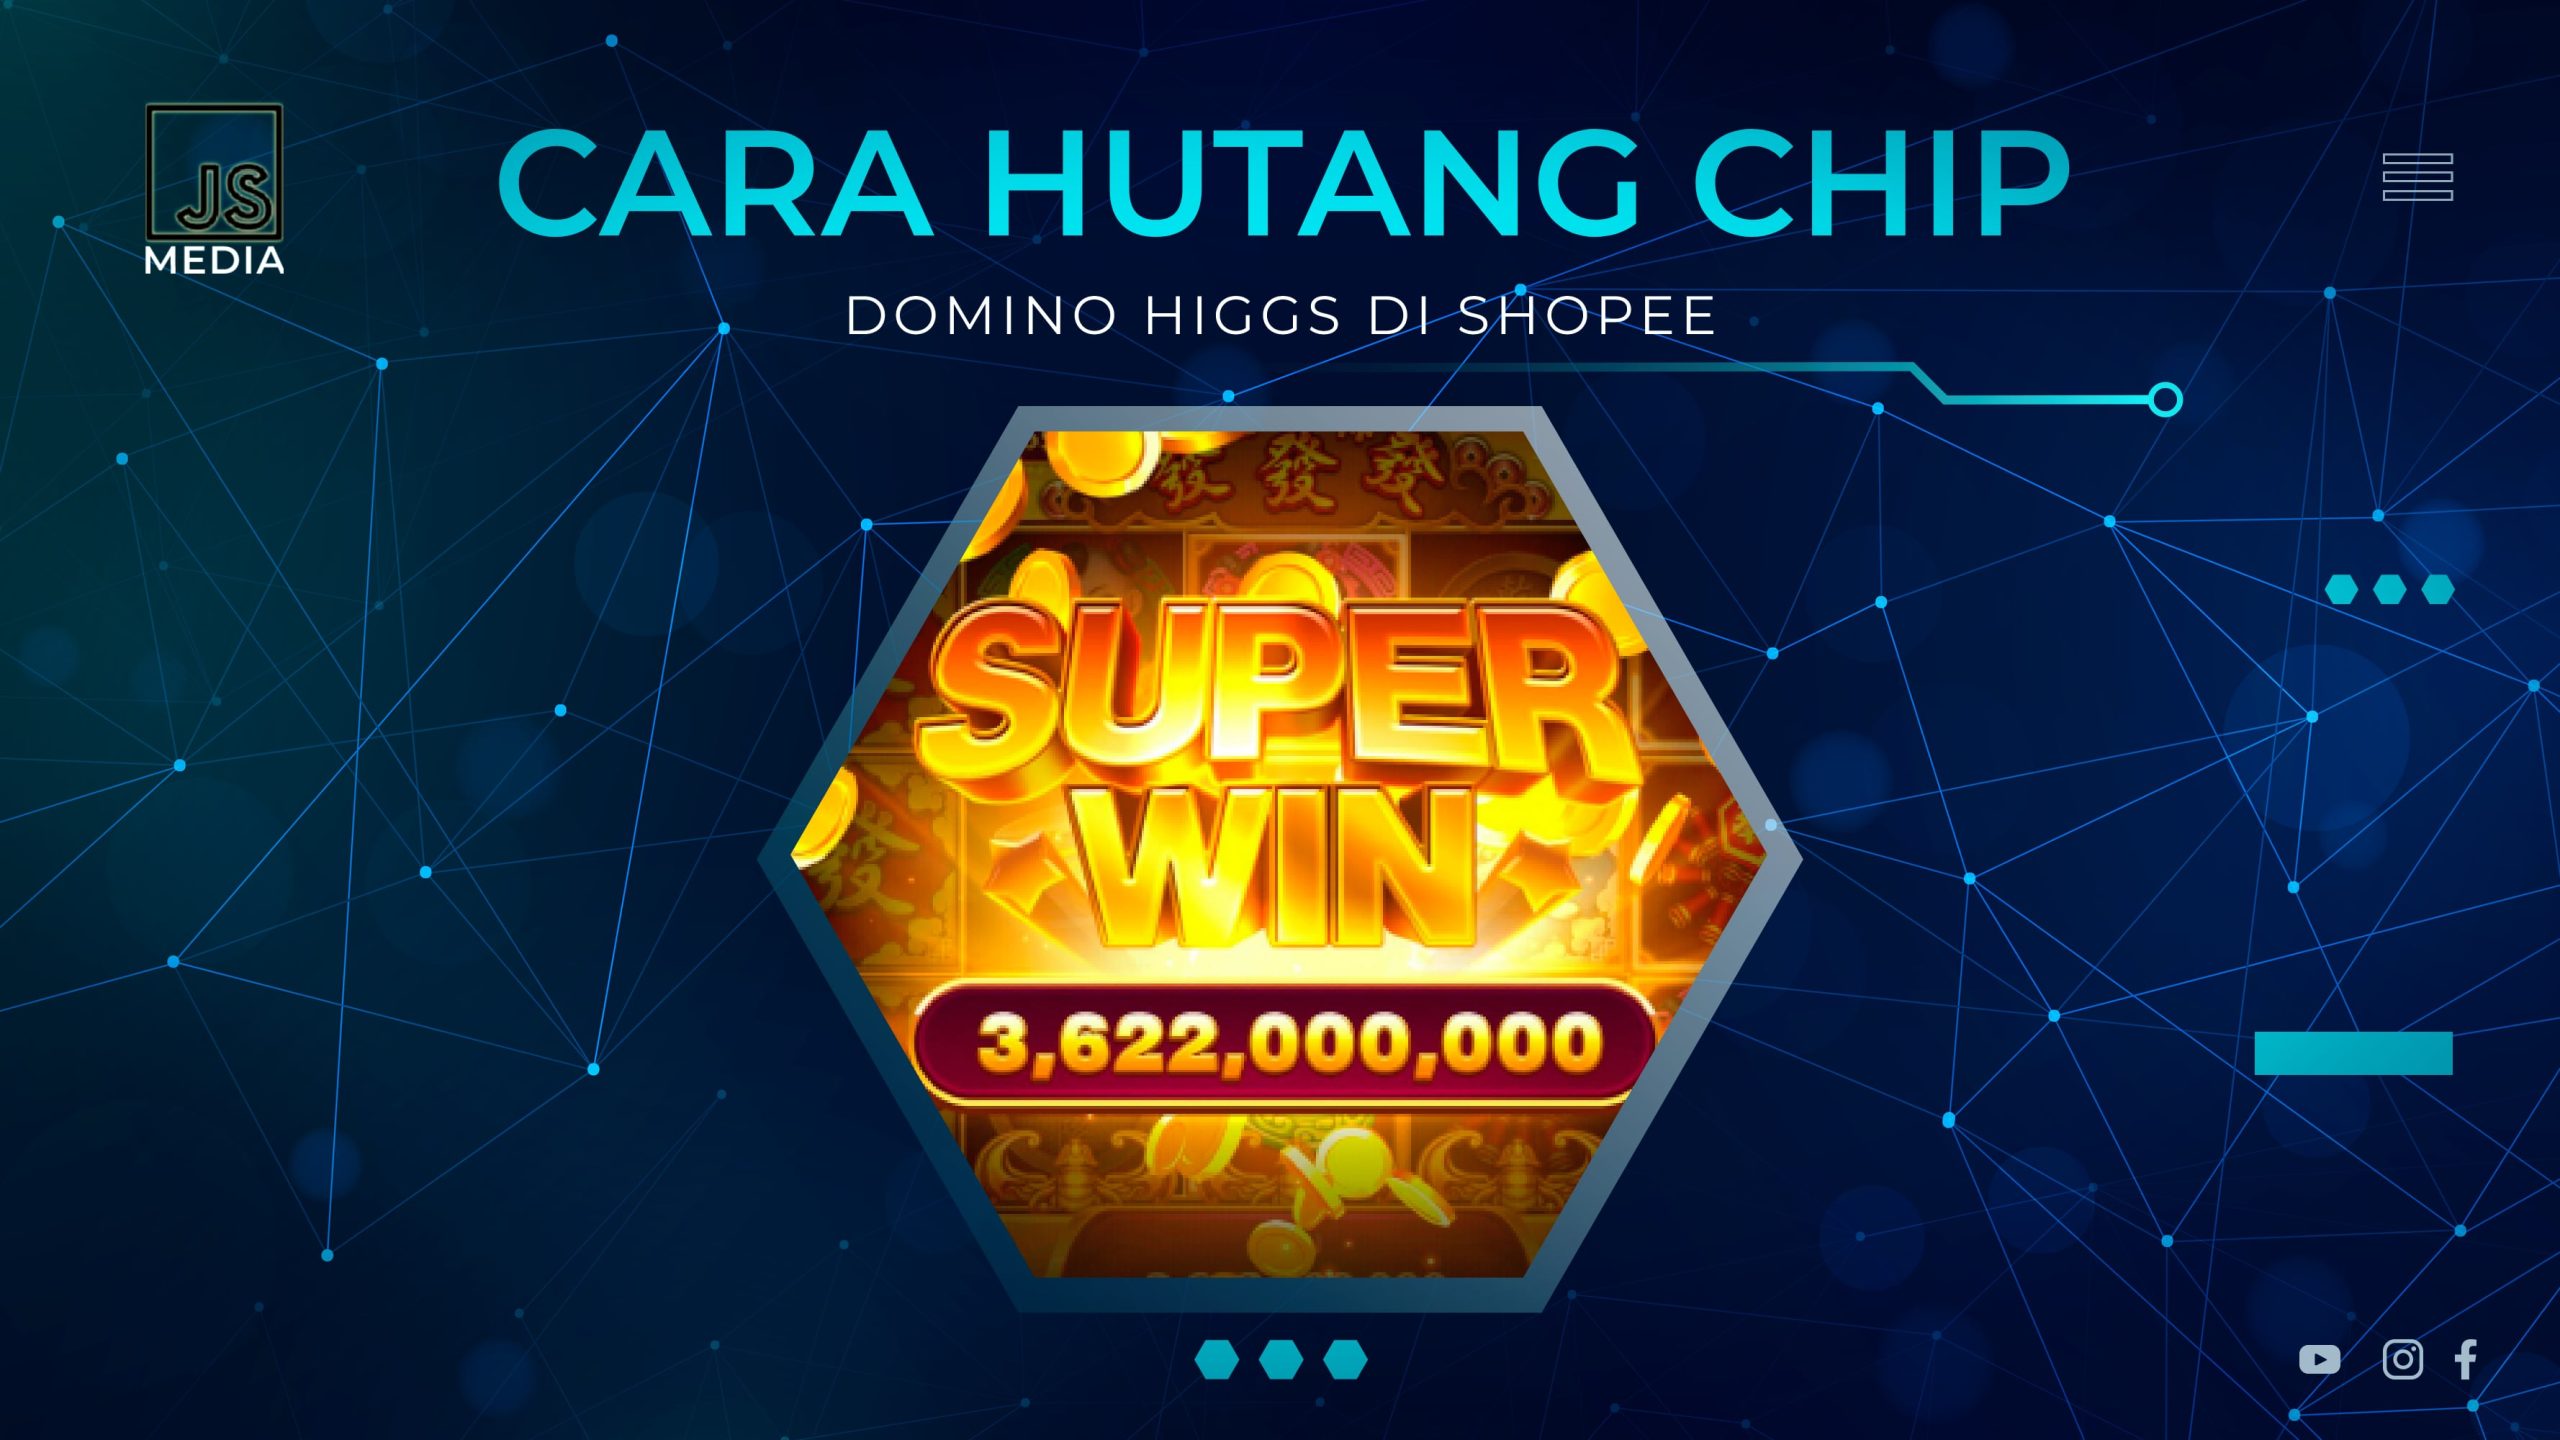 Cara Hutang Chip Domino Higgs di Shopee Dengan Mudah!